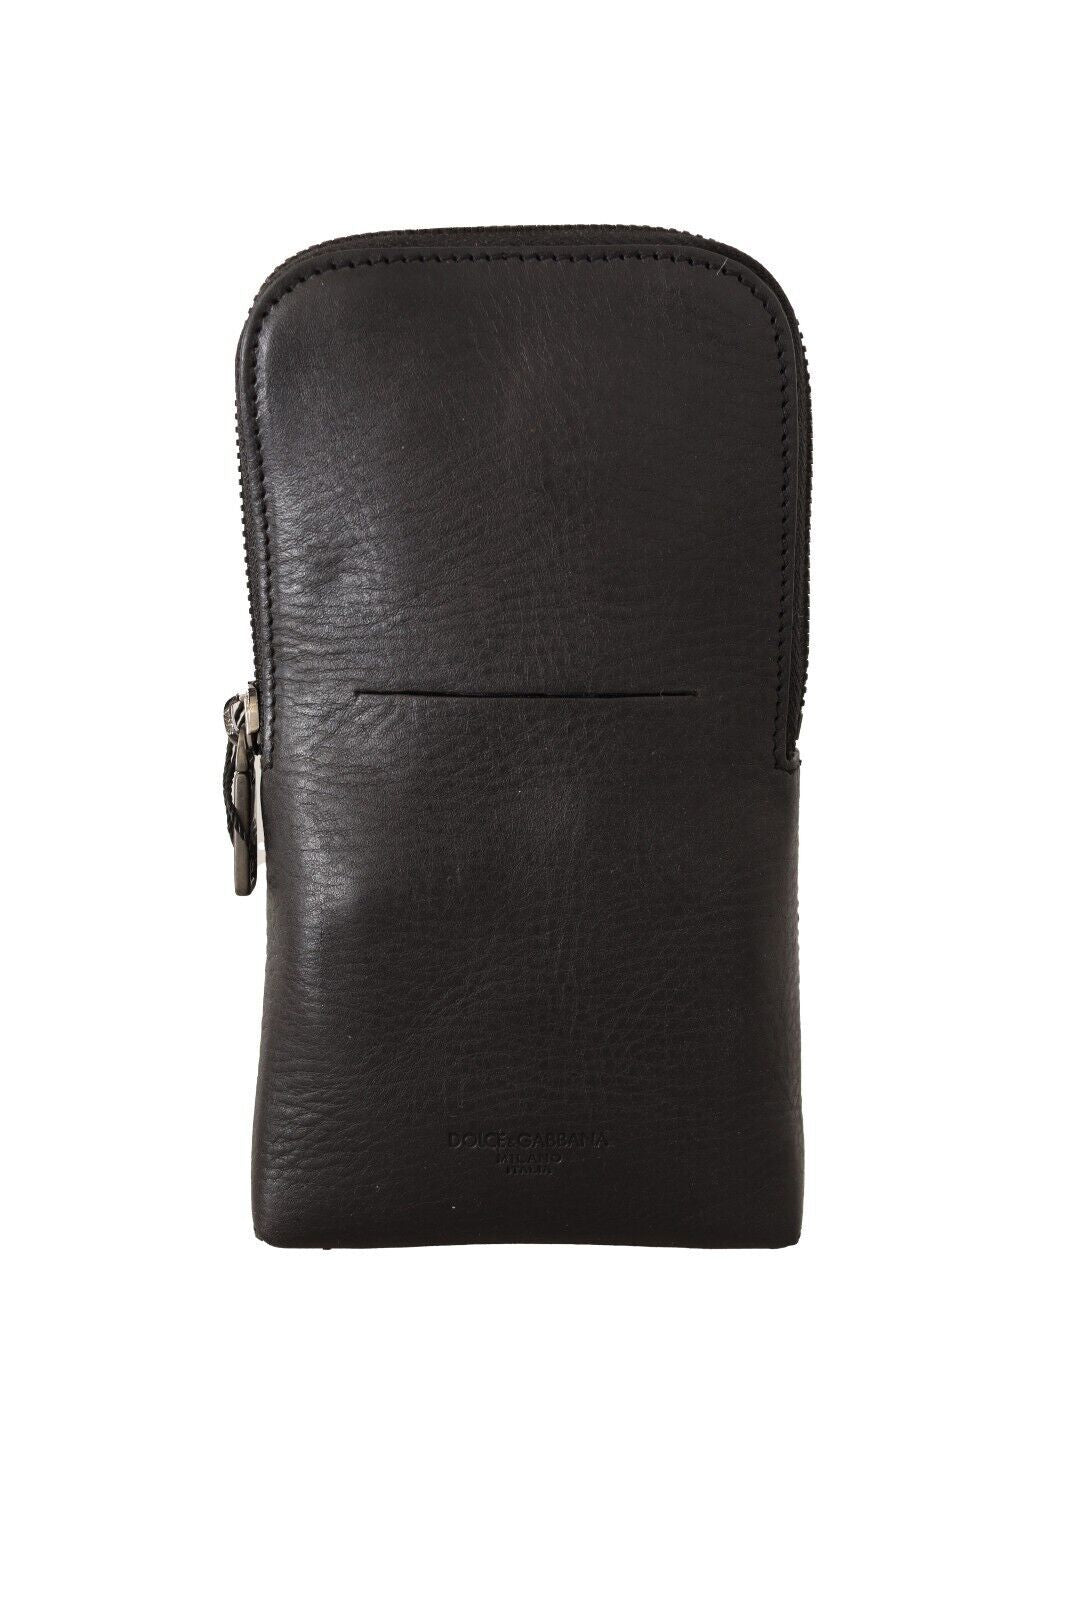 Elegant Black Leather Double-Strap Multi Kit